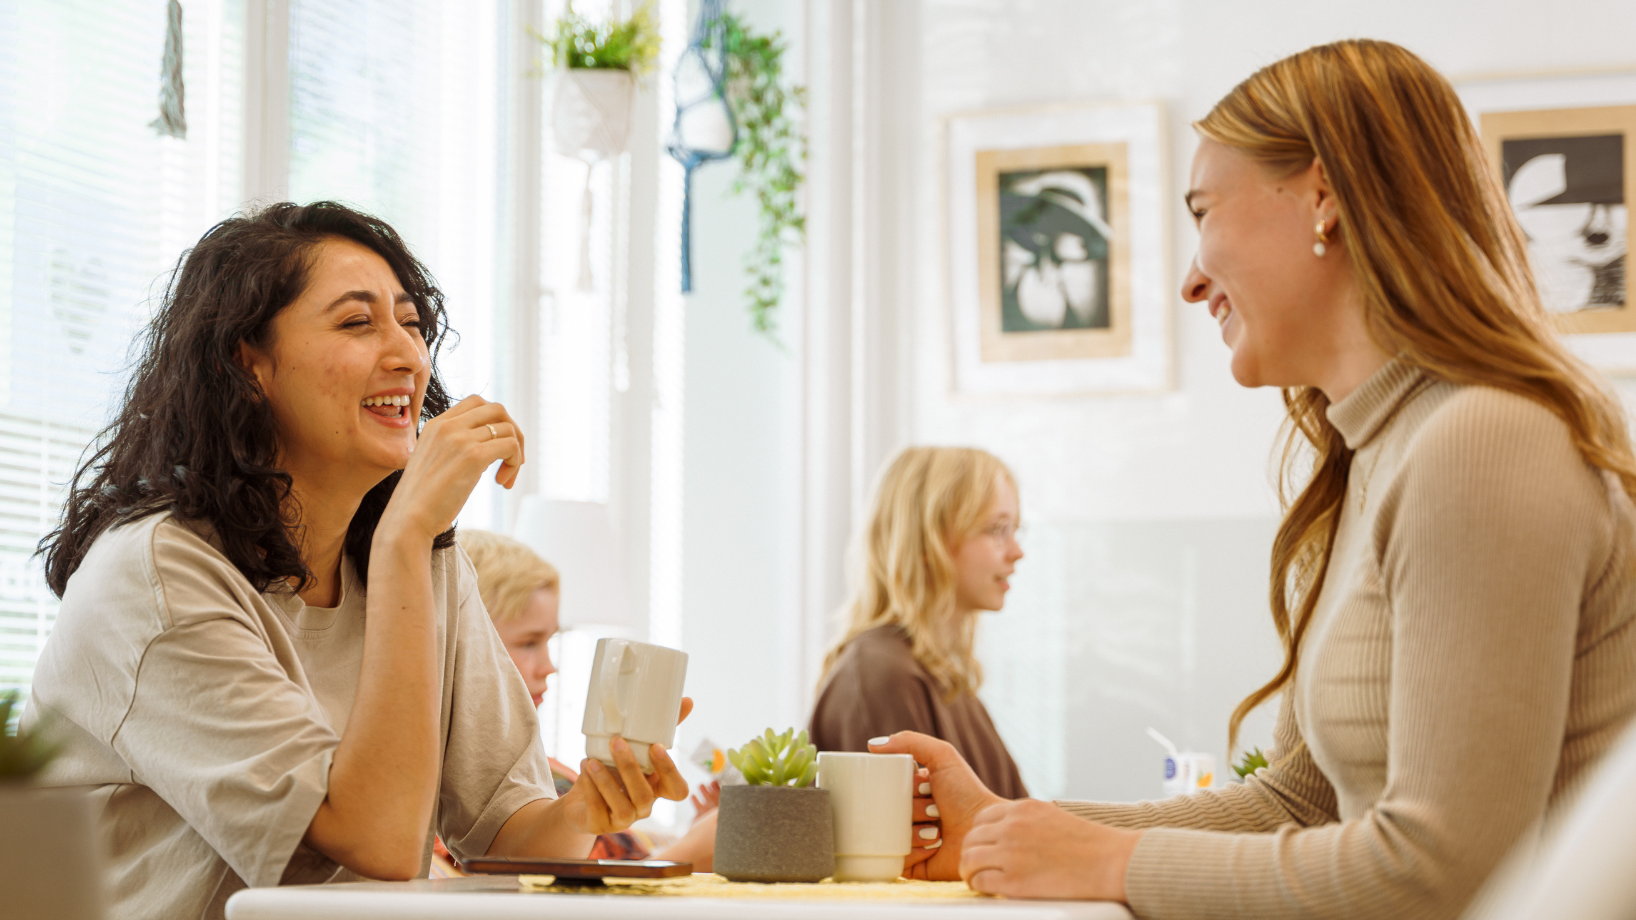 kaksi nuorta naista istuu kahvilassa ja nauraa